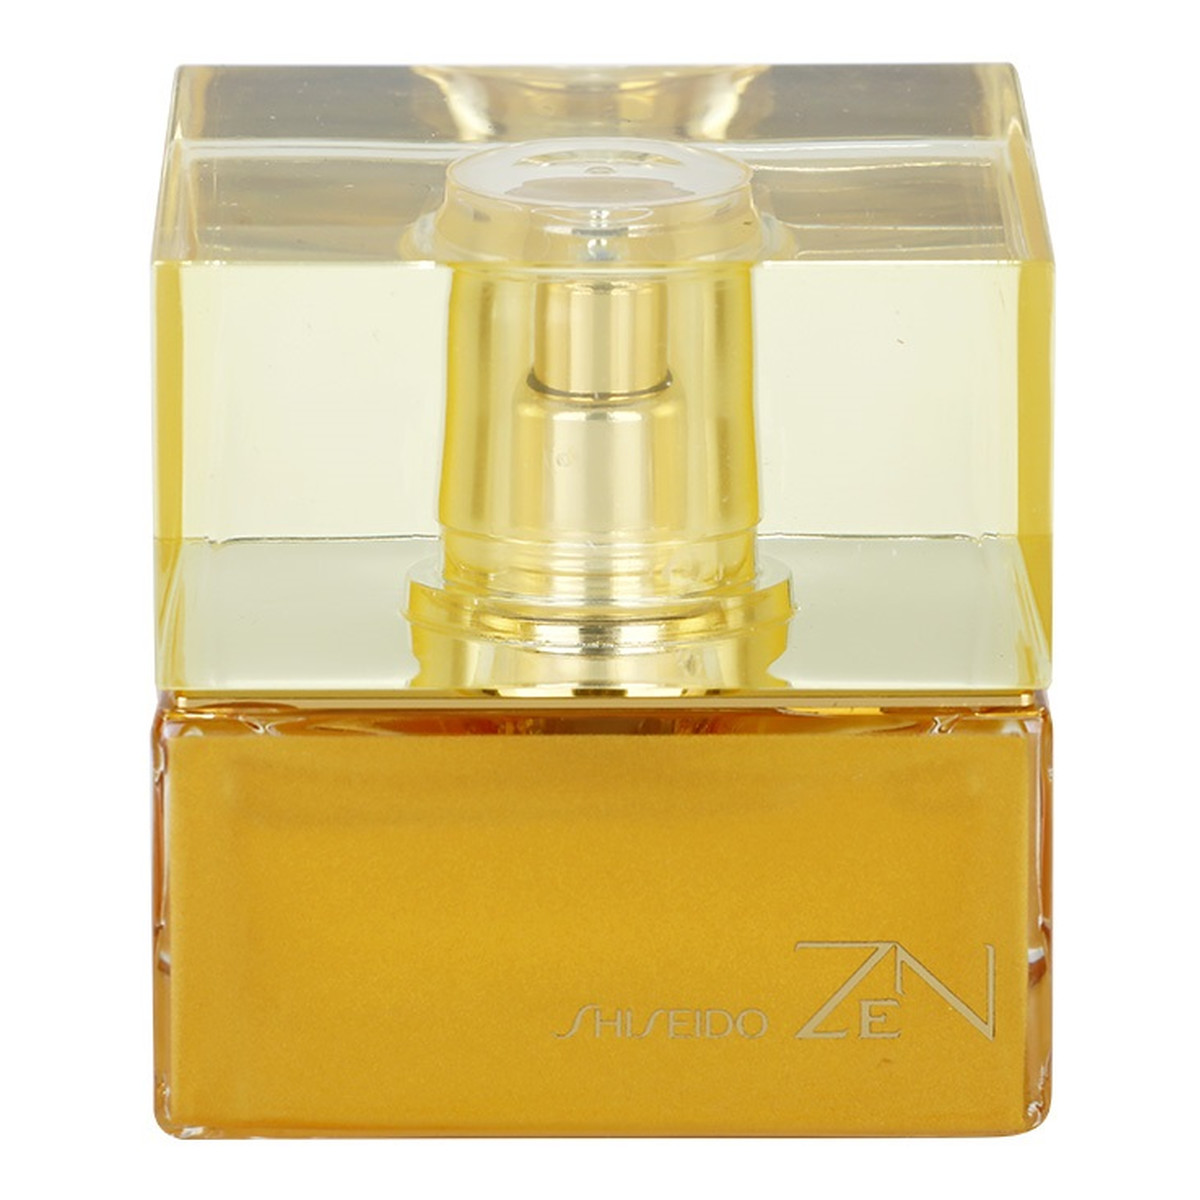 Shiseido Zen woda perfumowana dla kobiet 30ml